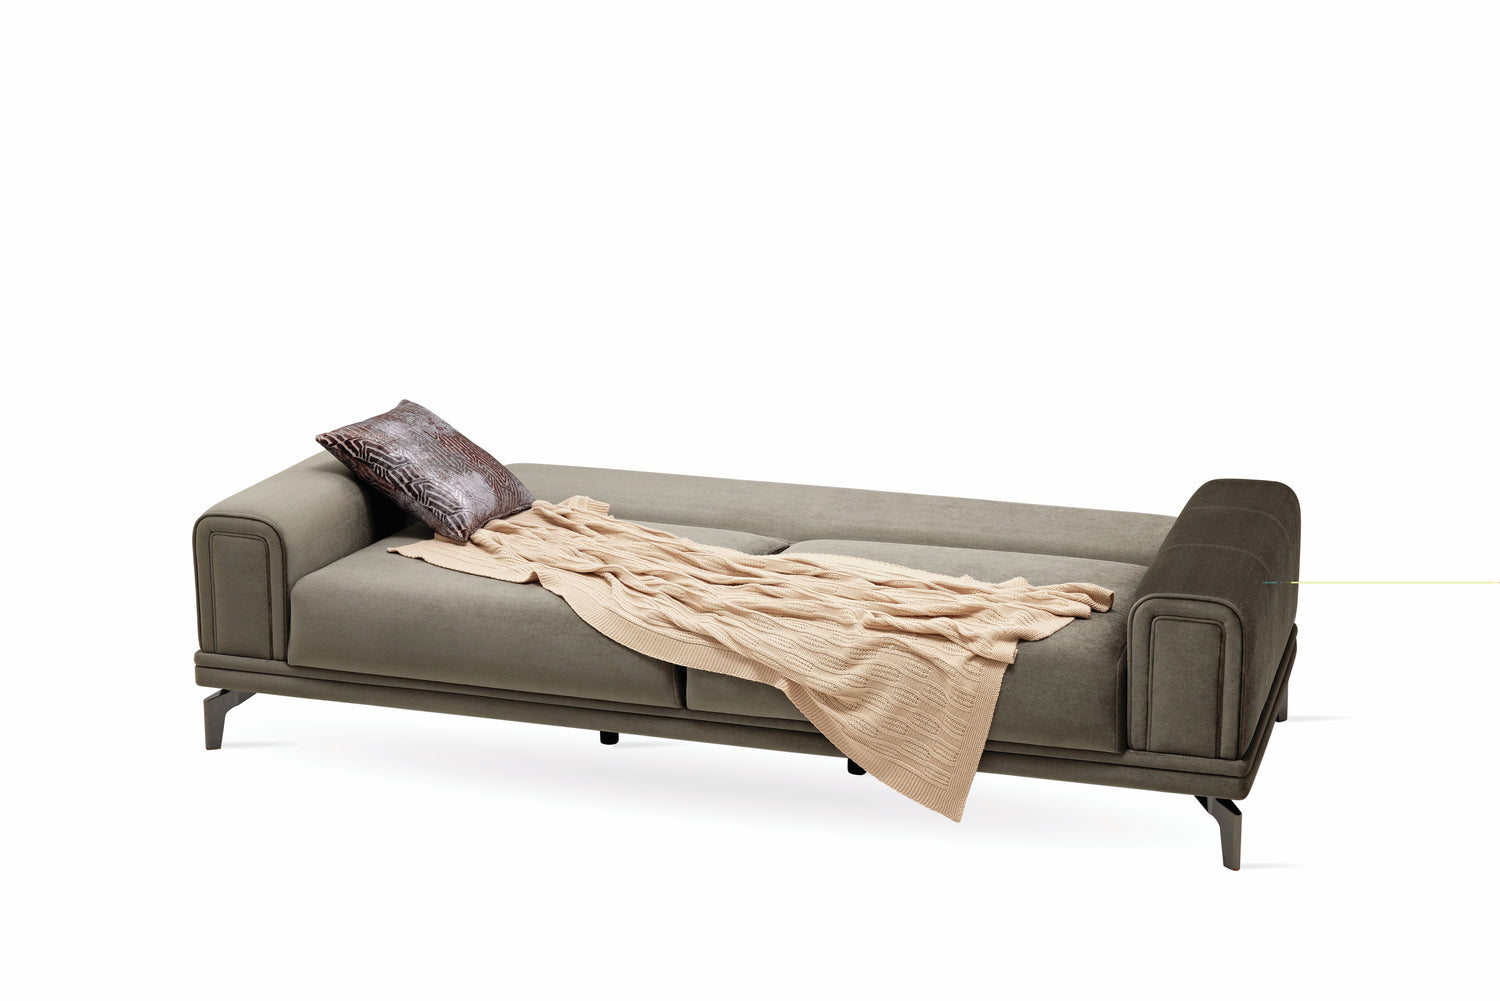 Evora Khaki Green 3-Seater Sofa Bed - EVORA 03.302.0520.0930.0067.0000.21.23